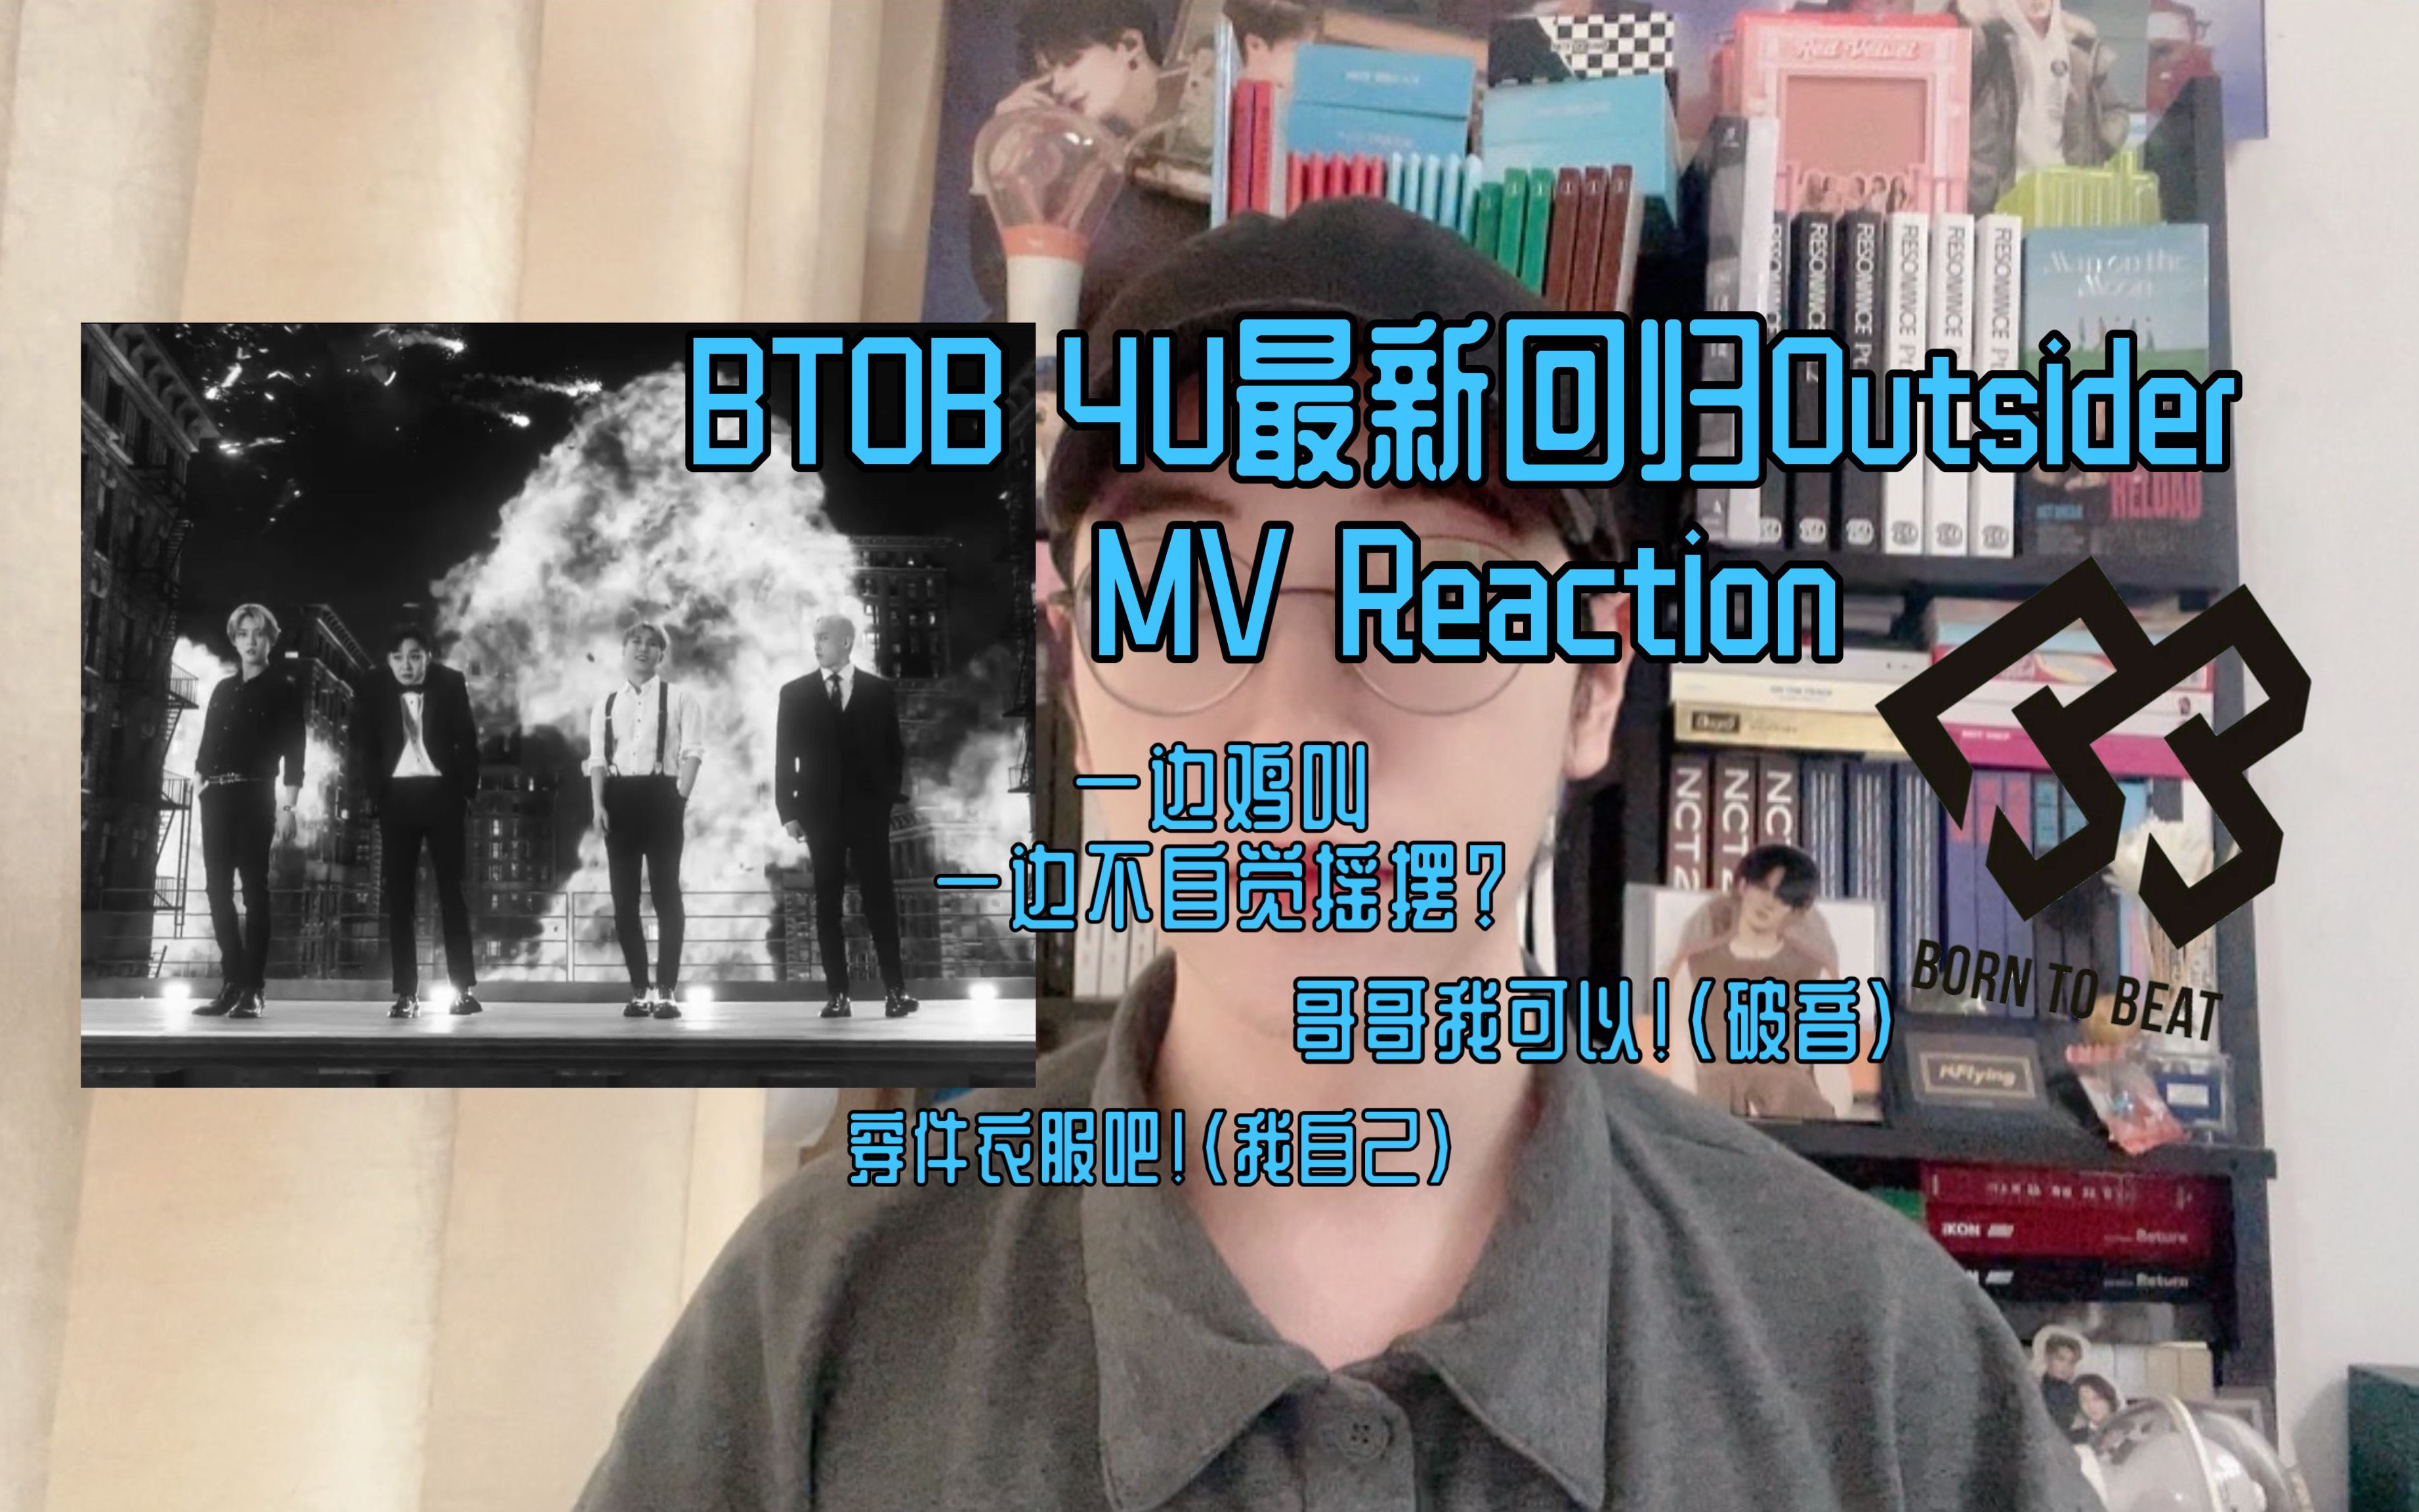 是谁在鸡叫？又是谁被帅死了？原来都是我！BTOB 4U最新回归曲Outsider MV Reaction！哥哥都太帅了！我可以！(破音)